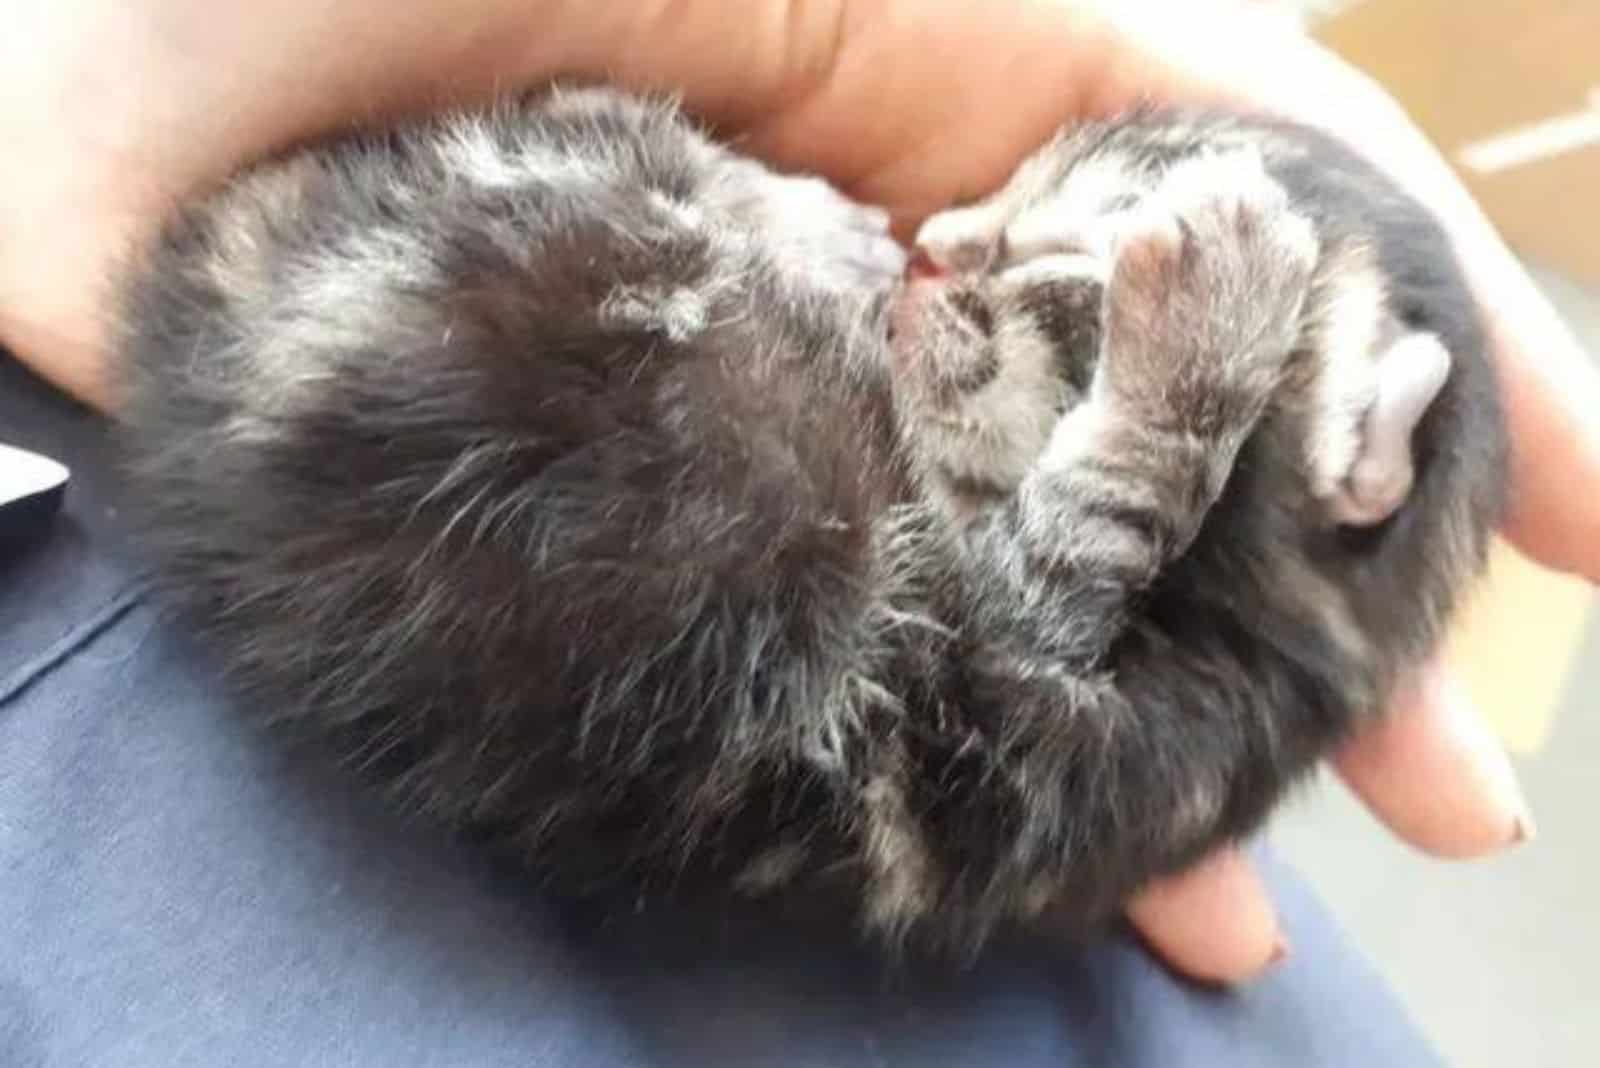 tiny uninjured kitten